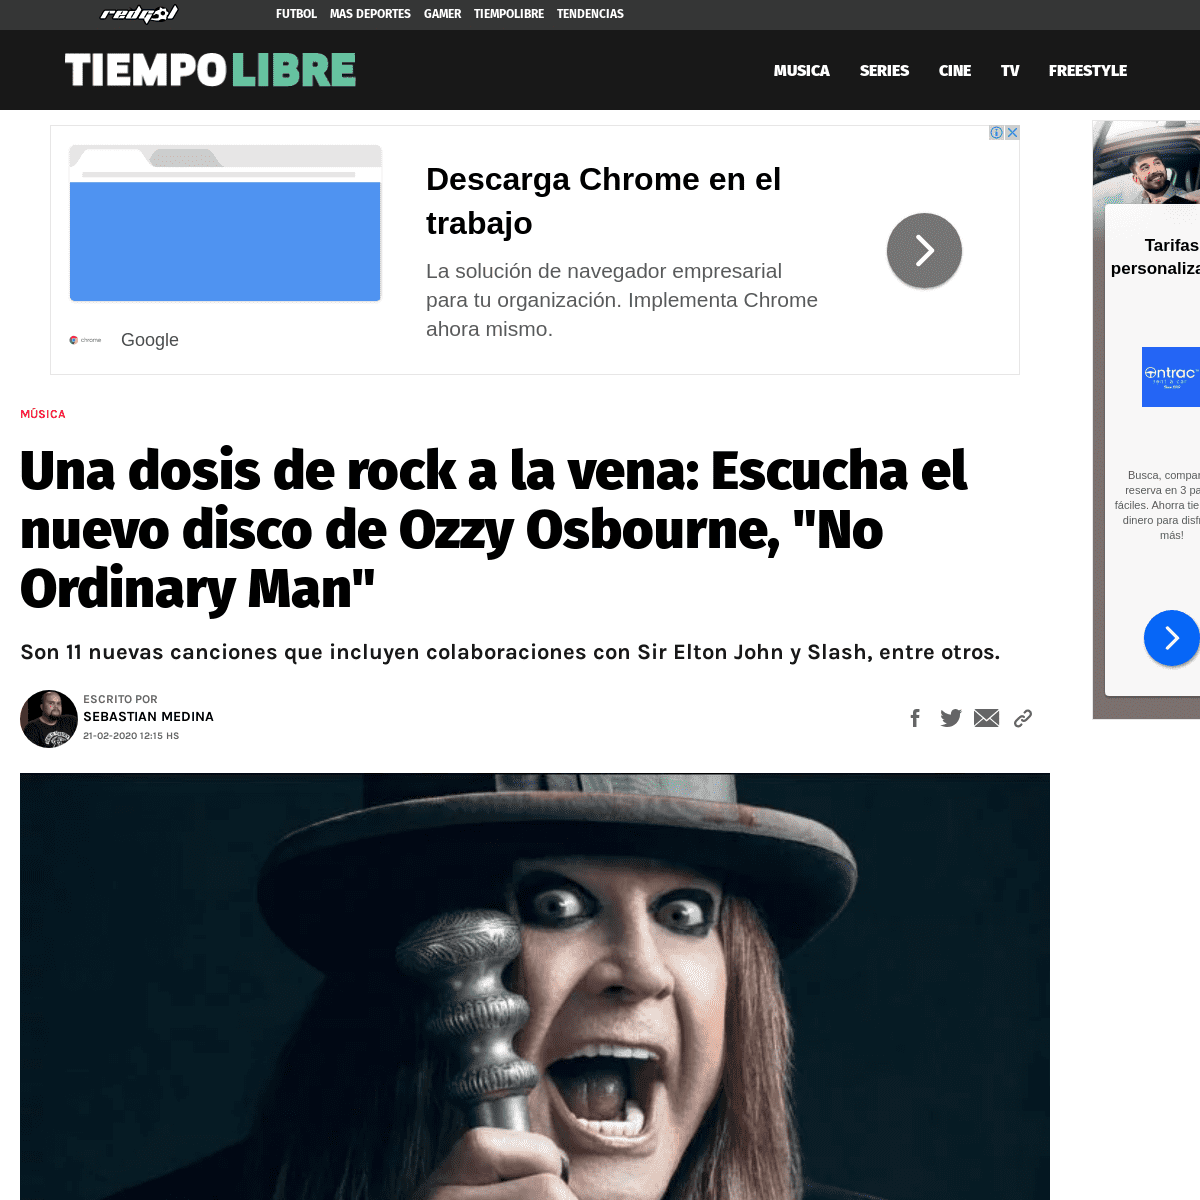 A complete backup of redgol.cl/tiempolibre/Escucha-el-nuevo-disco-de-Ozzy-Osbourne-No-Ordinary-Man-20200221-0039.html